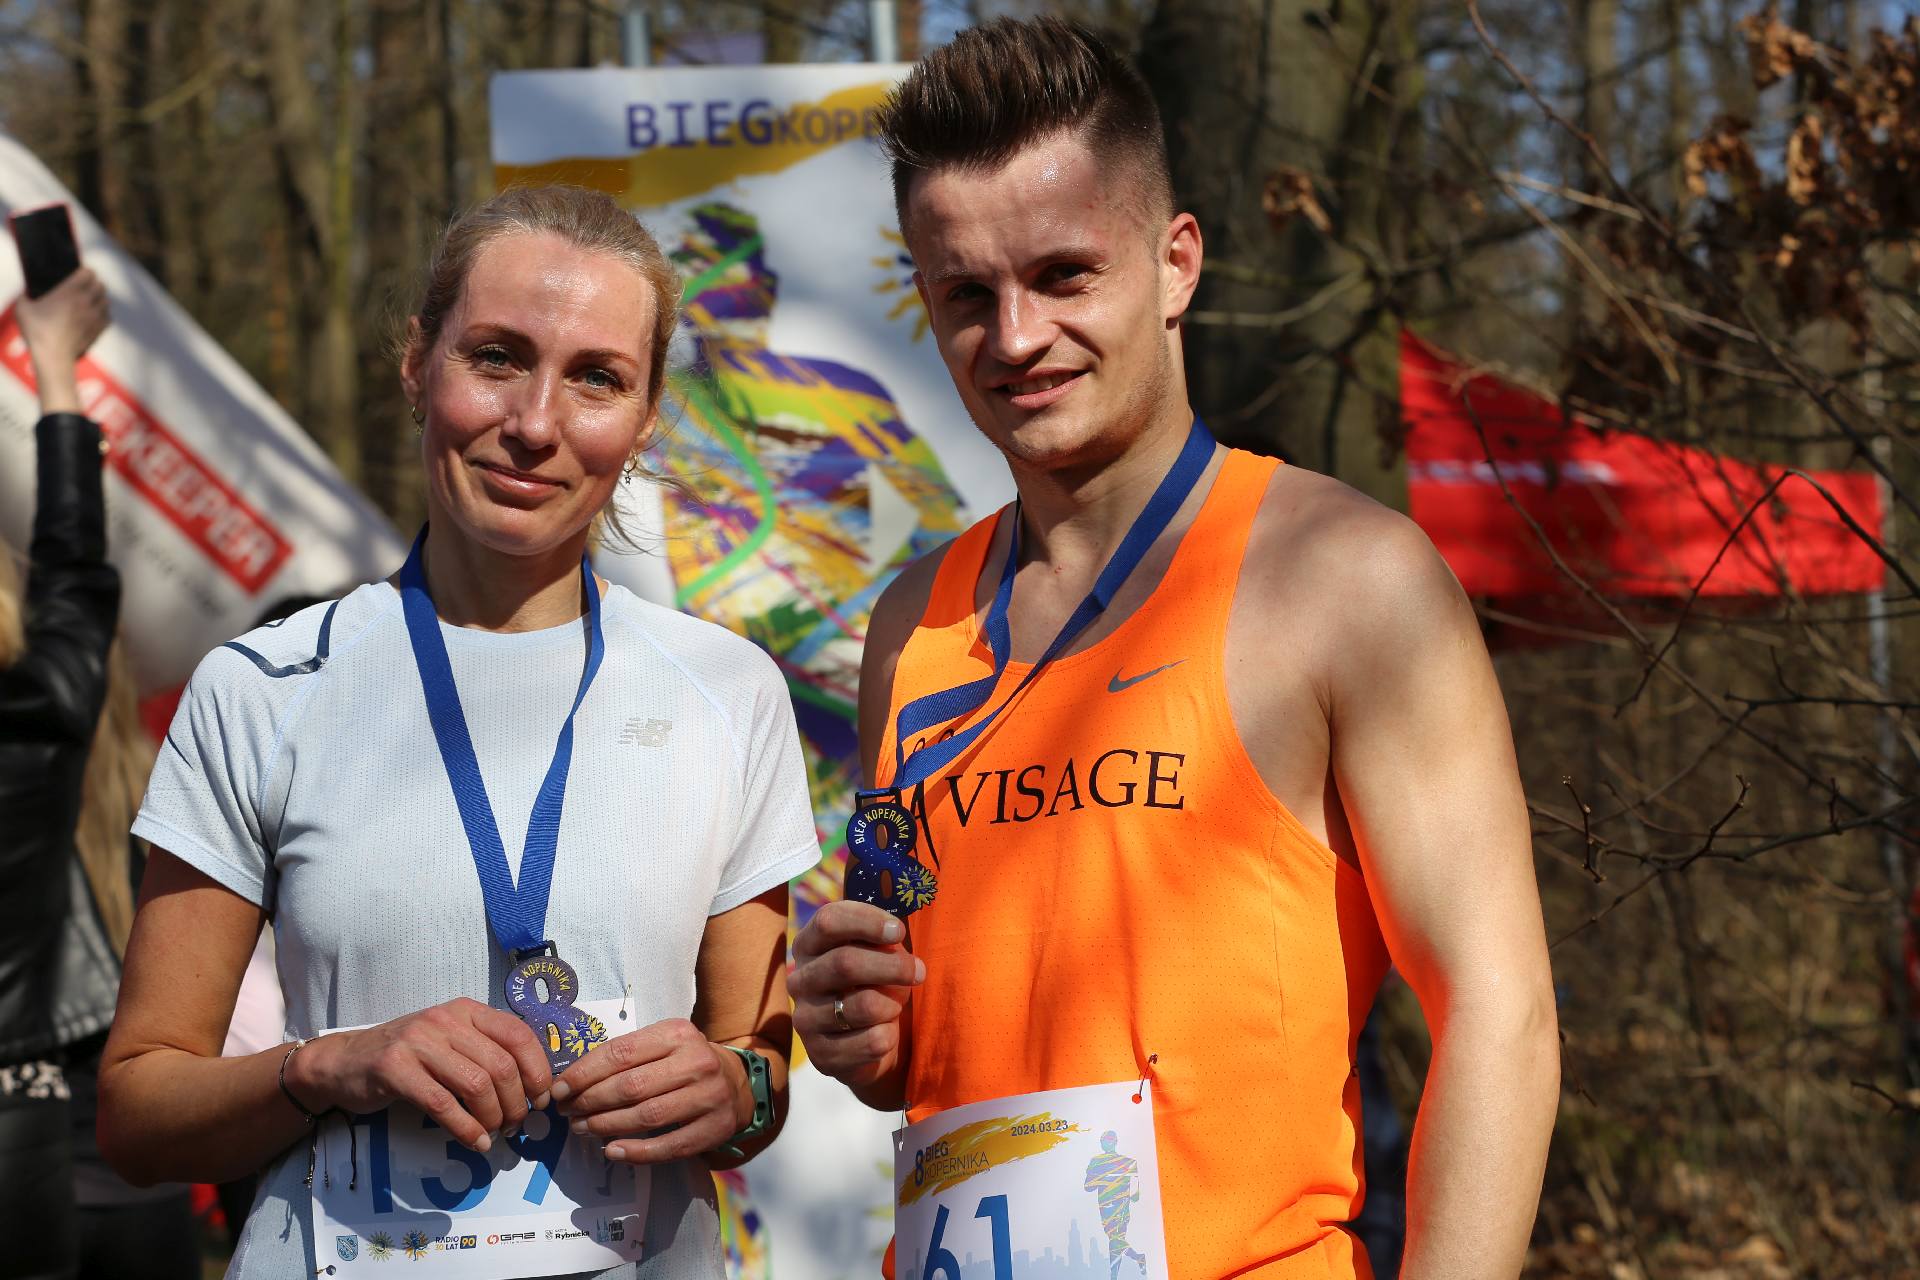 Zwycięzcy biegu na 5 km Bogumiła Kędzierska i Damian Olchówka. Zdj. Wacław Troszka